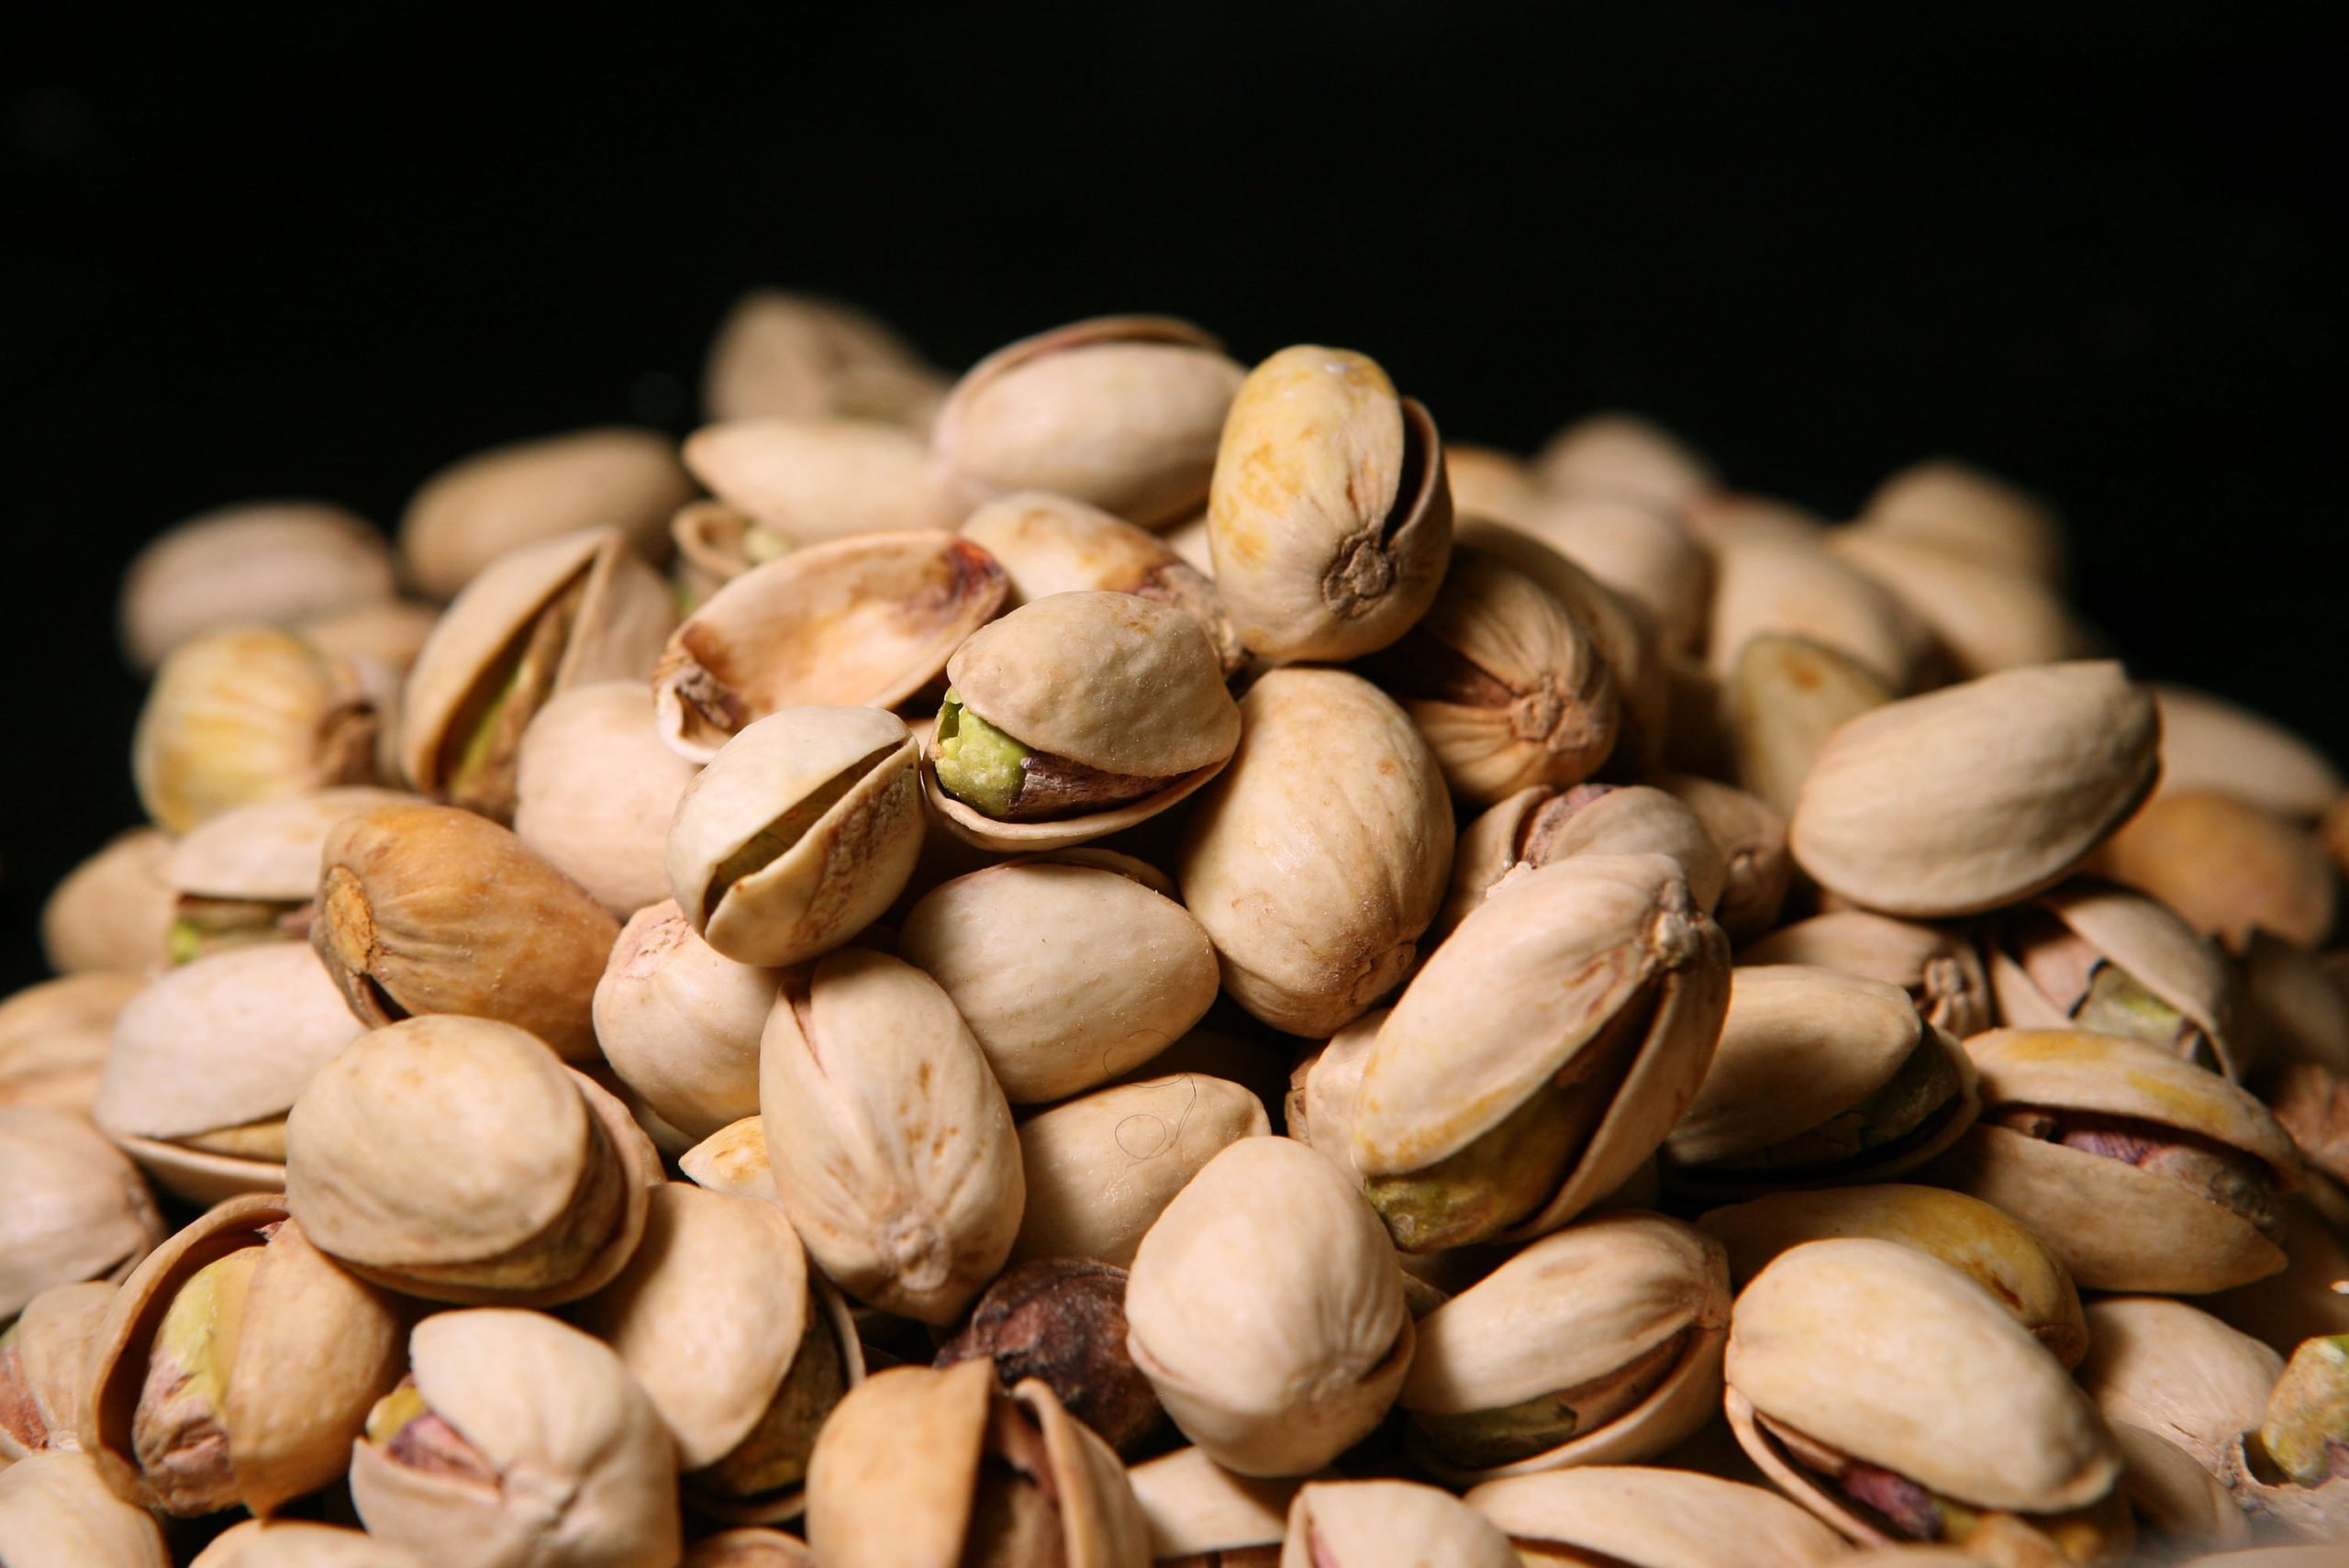 Sale of Feyzabad exported Badami pistachios